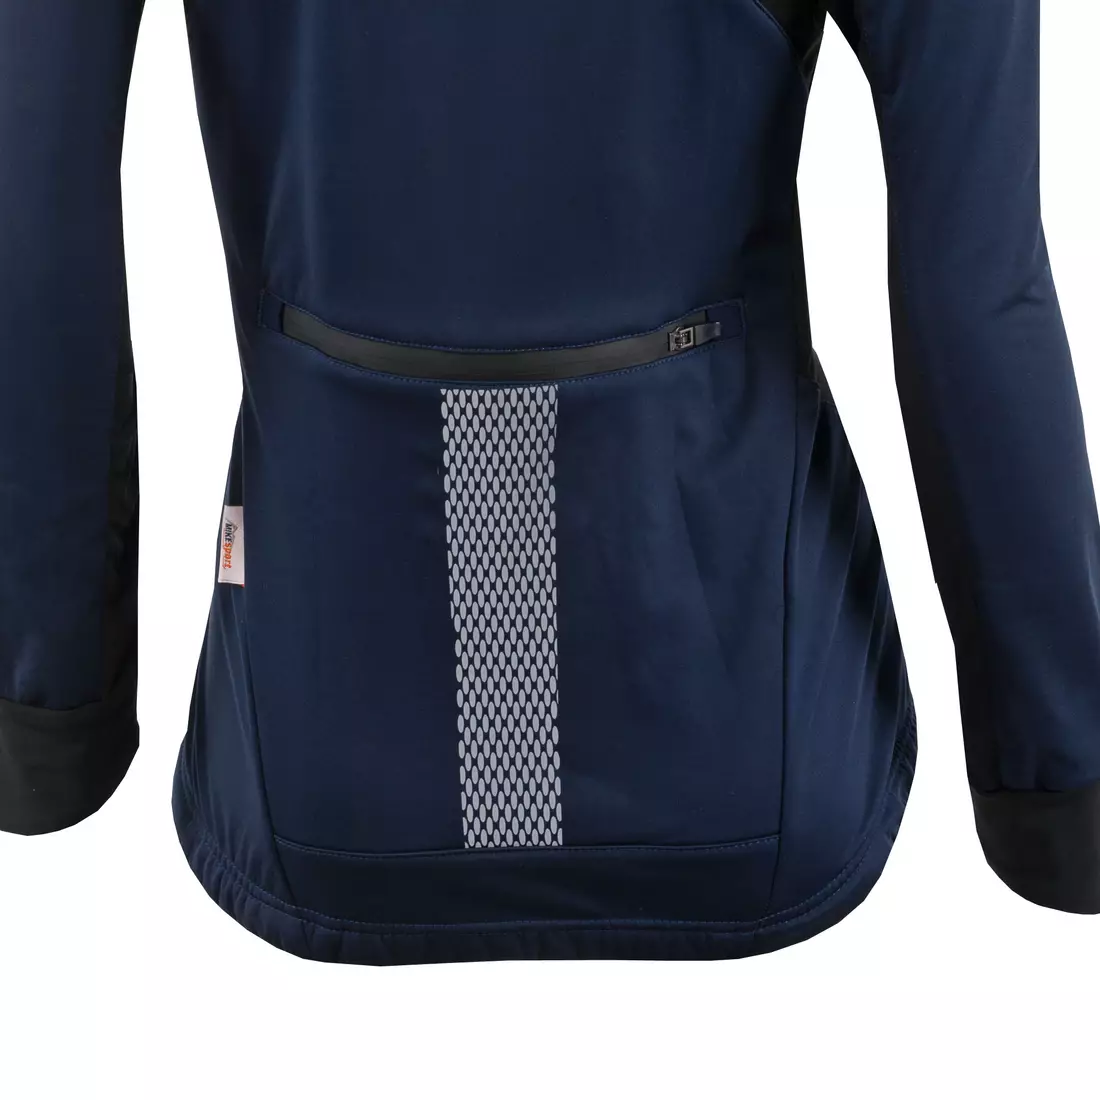 KAYMAQ JWSW-100 női téli softshell kerékpáros kabát kék-fekete